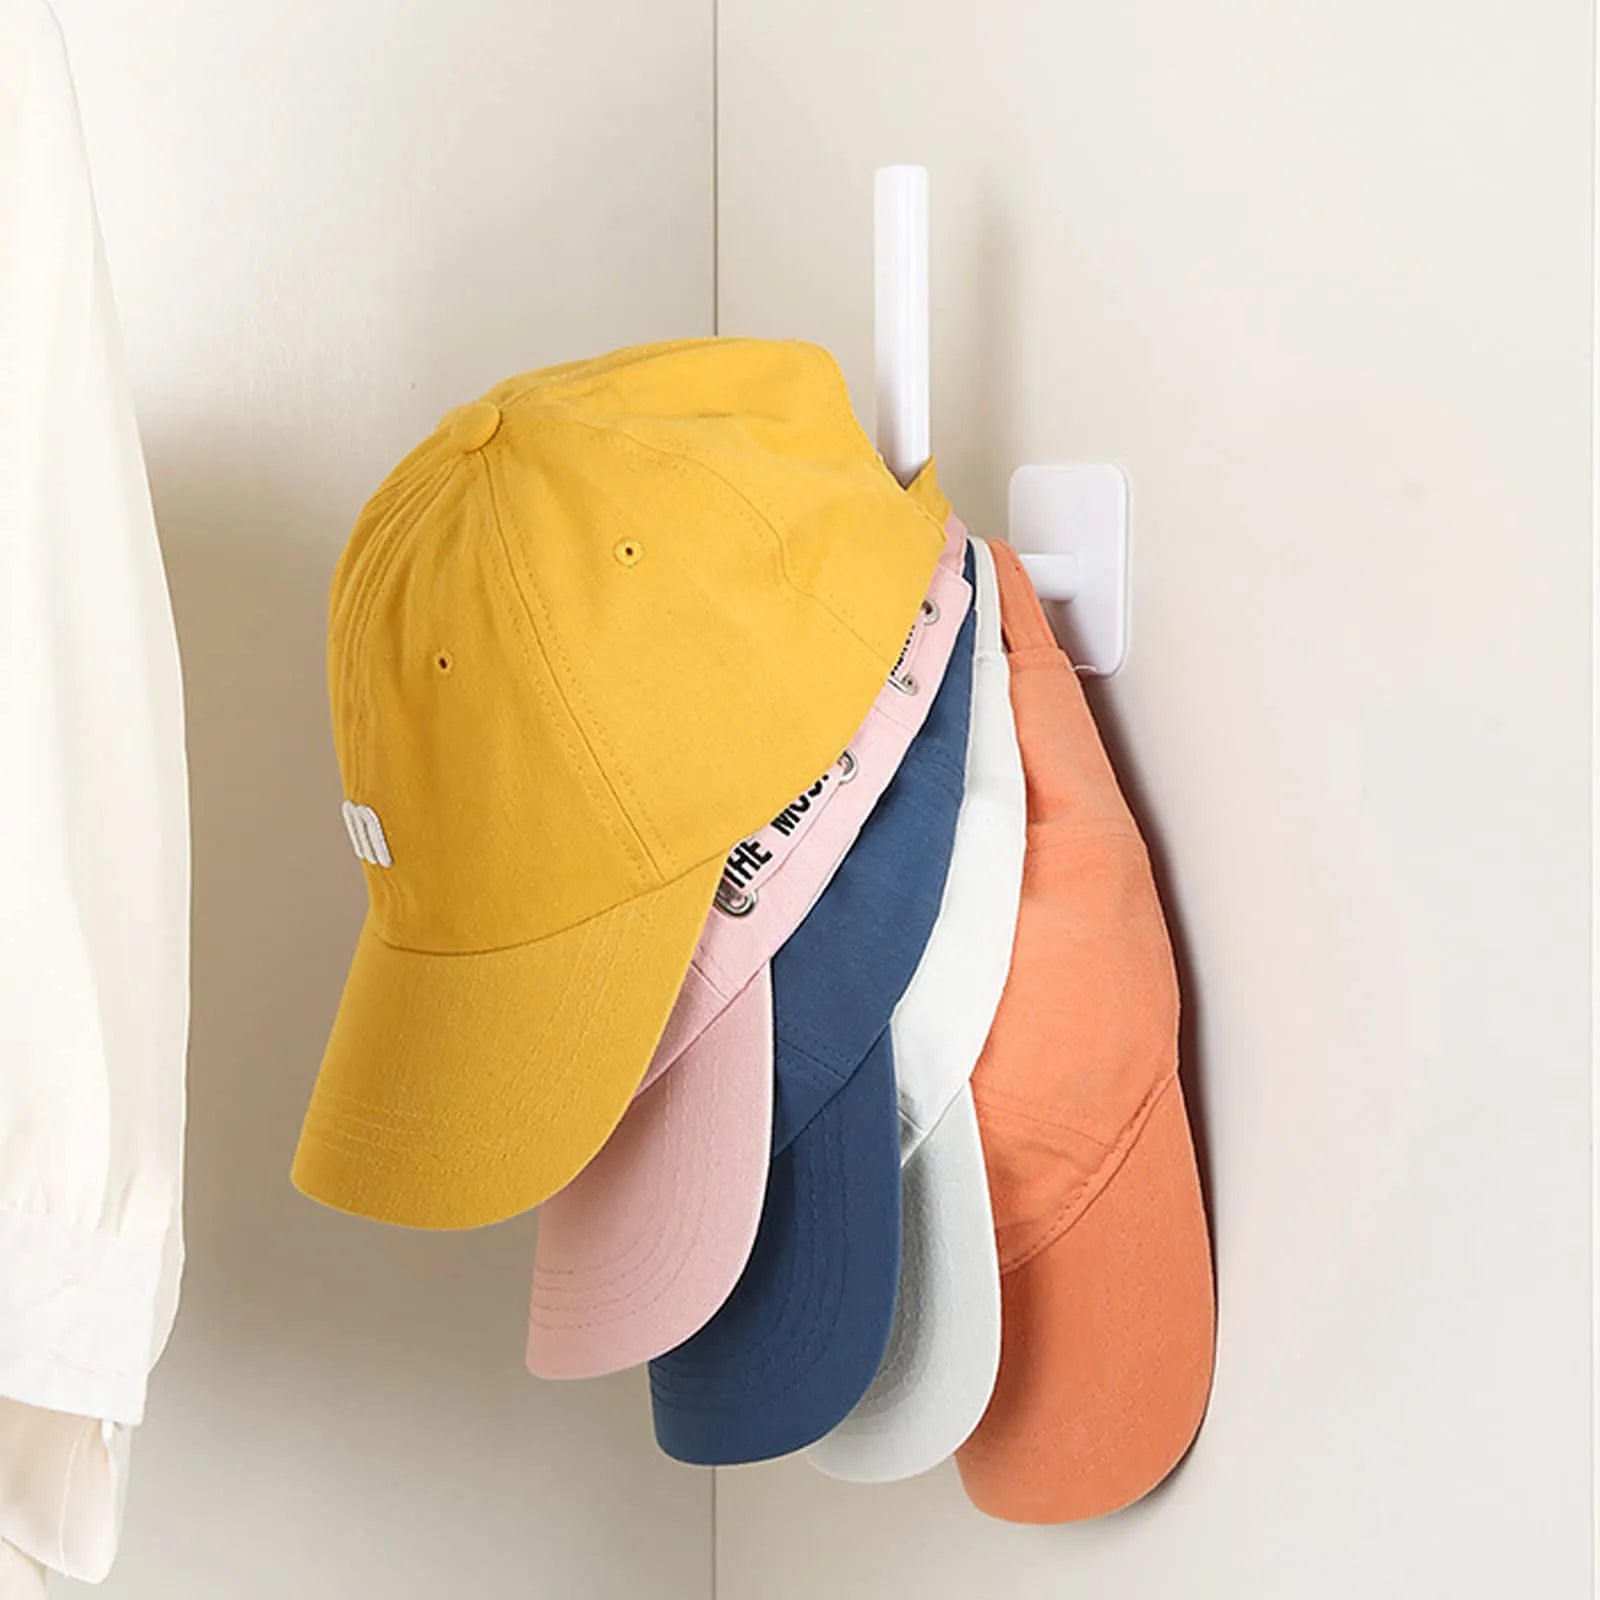 حامل القبعات لقبعات البيسبول لاصق قبعة السنانير لغطاء الحائط شماعات غطاء التخزين المنظم لا حامل قبعة الحفر لخزانة الباب